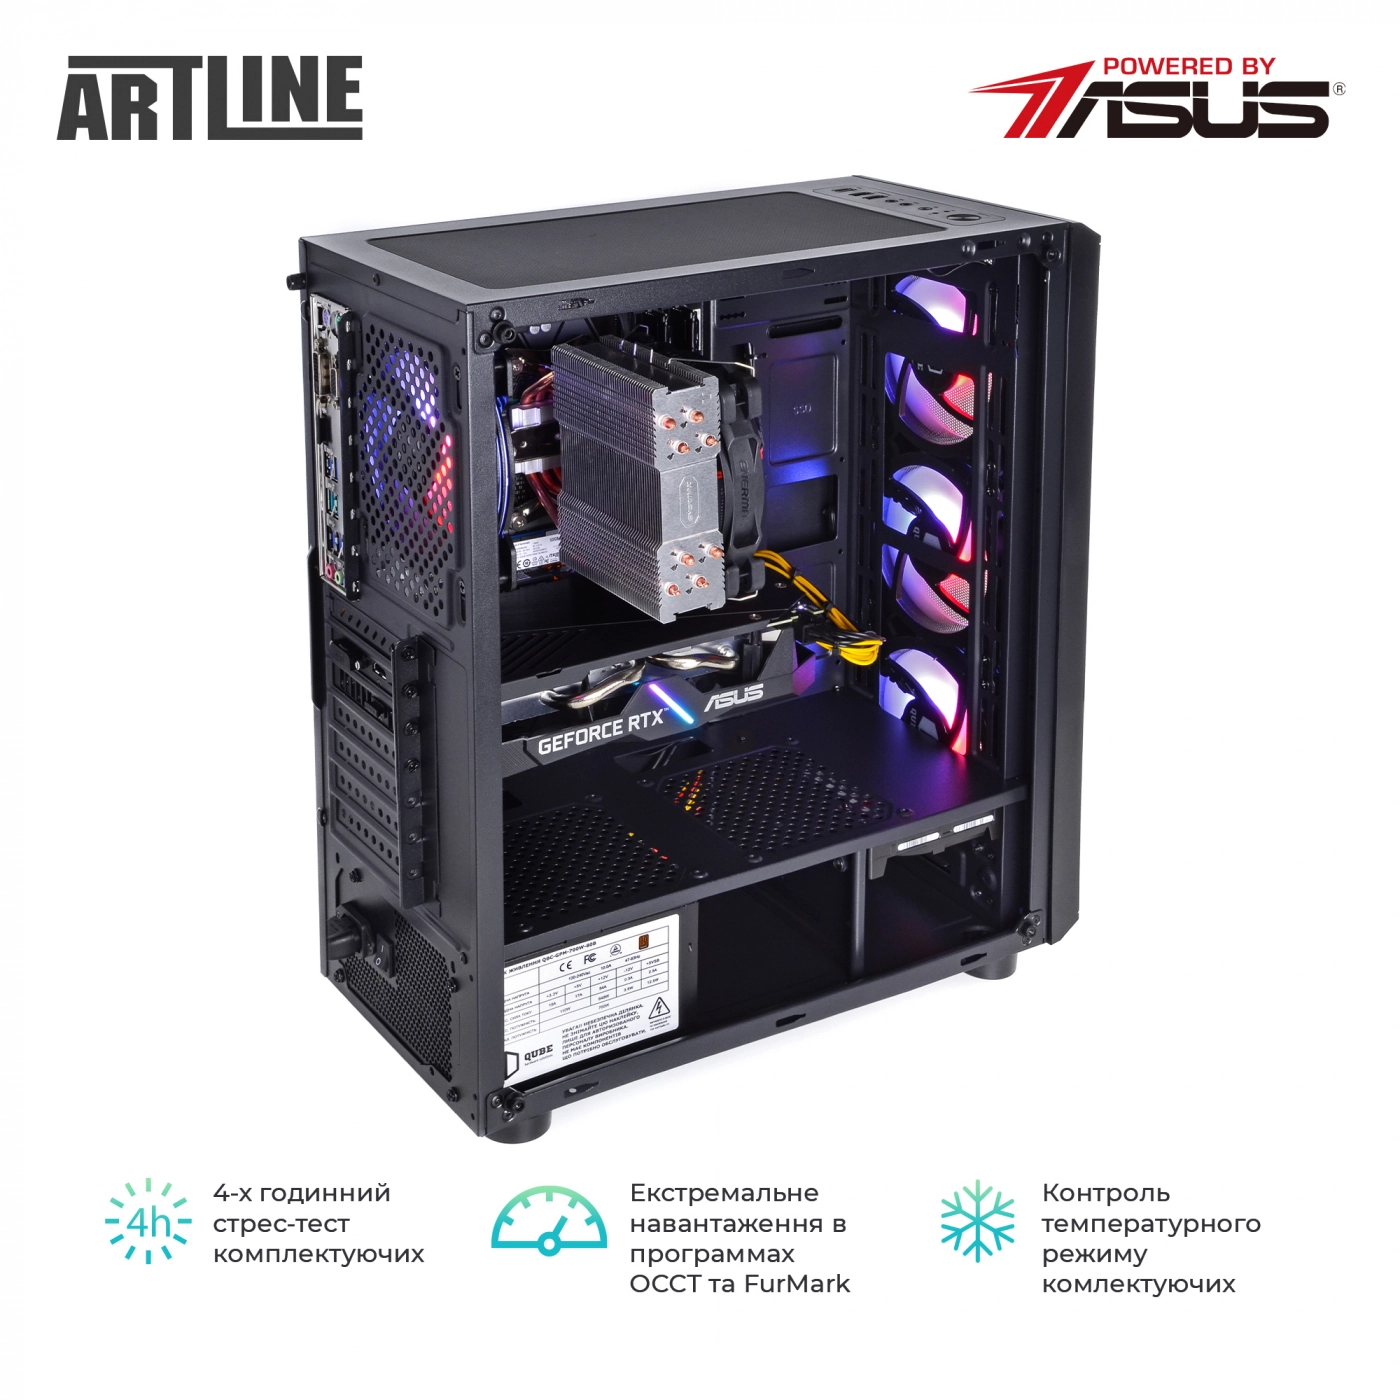 Купить Компьютер ARTLINE Gaming X75v22 - фото 9